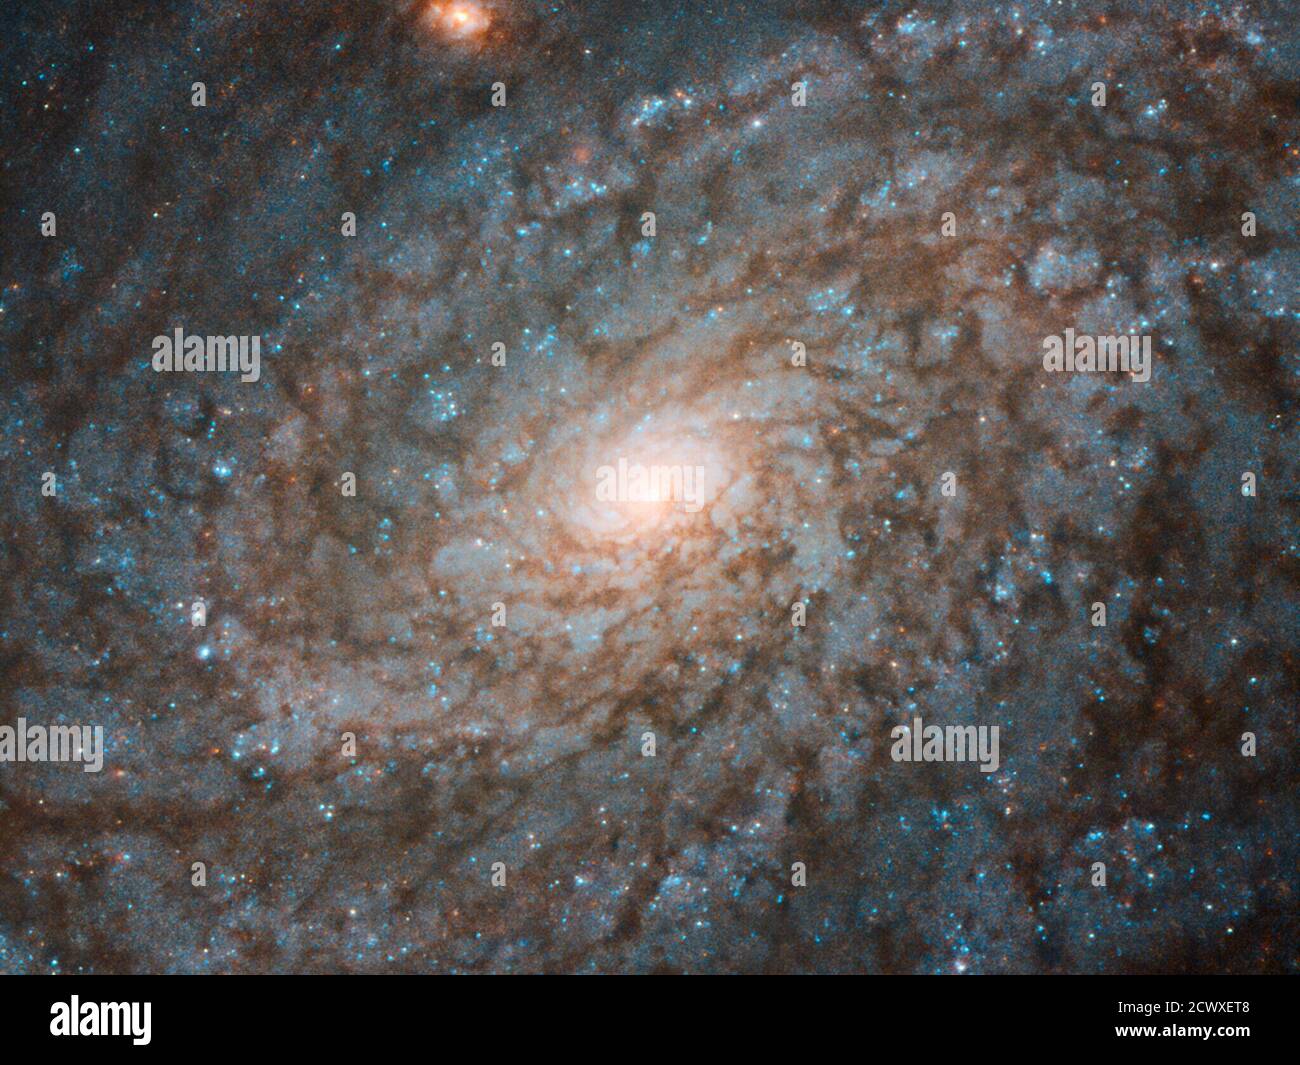 Hubble gazes at Fluffy-looking Galaxy questa immagine presa dal telescopio spaziale Hubble NASA/ESA mostra la galassia NGC 4237. Situato a circa 60 milioni di anni luce dalla Terra nella costellazione di Coma Berenice (capelli di Berenice), NGC 4237 è classificato come una galassia a spirale flocculante. Ciò significa che i suoi bracci a spirale non sono chiaramente distinguibili tra loro, come nelle galassie a spirale "Grand design", ma sono piuttosto irregolari e discontinui. Questo conferisce alla galassia un aspetto soffice, un po' simile al cotone soffiato. Gli astronomi che studiavano NGC 4237 erano in realtà più interessati al suo bu galattico Foto Stock